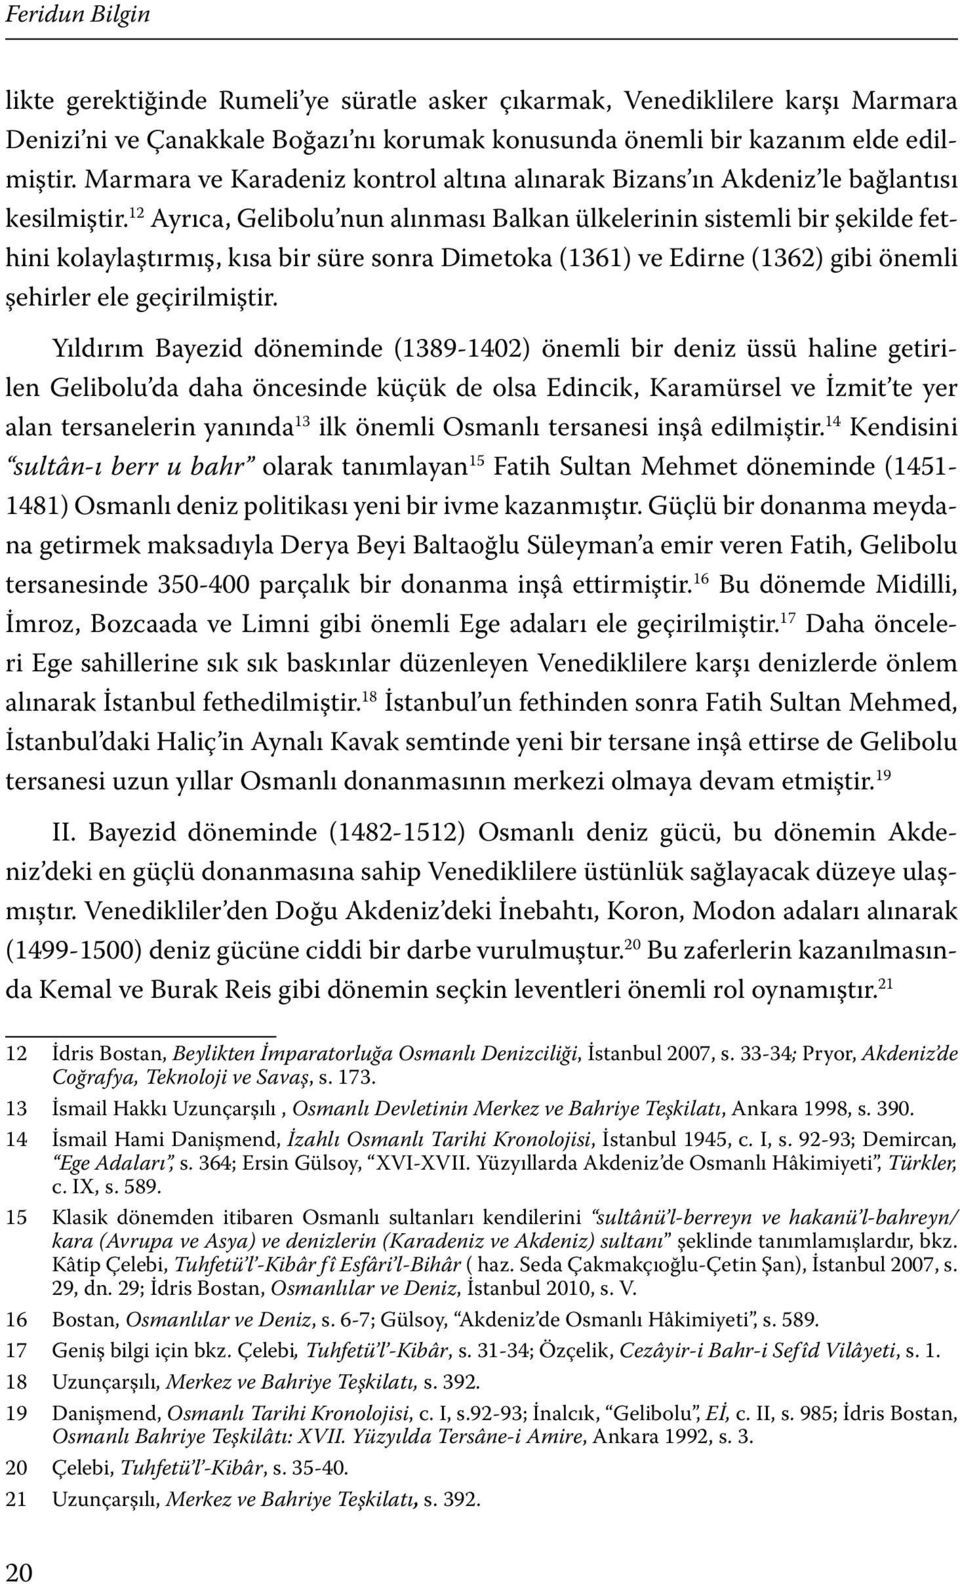 12 Ayrıca, Gelibolu nun alınması Balkan ülkelerinin sistemli bir şekilde fethini kolaylaştırmış, kısa bir süre sonra Dimetoka (1361) ve Edirne (1362) gibi önemli şehirler ele geçirilmiştir.